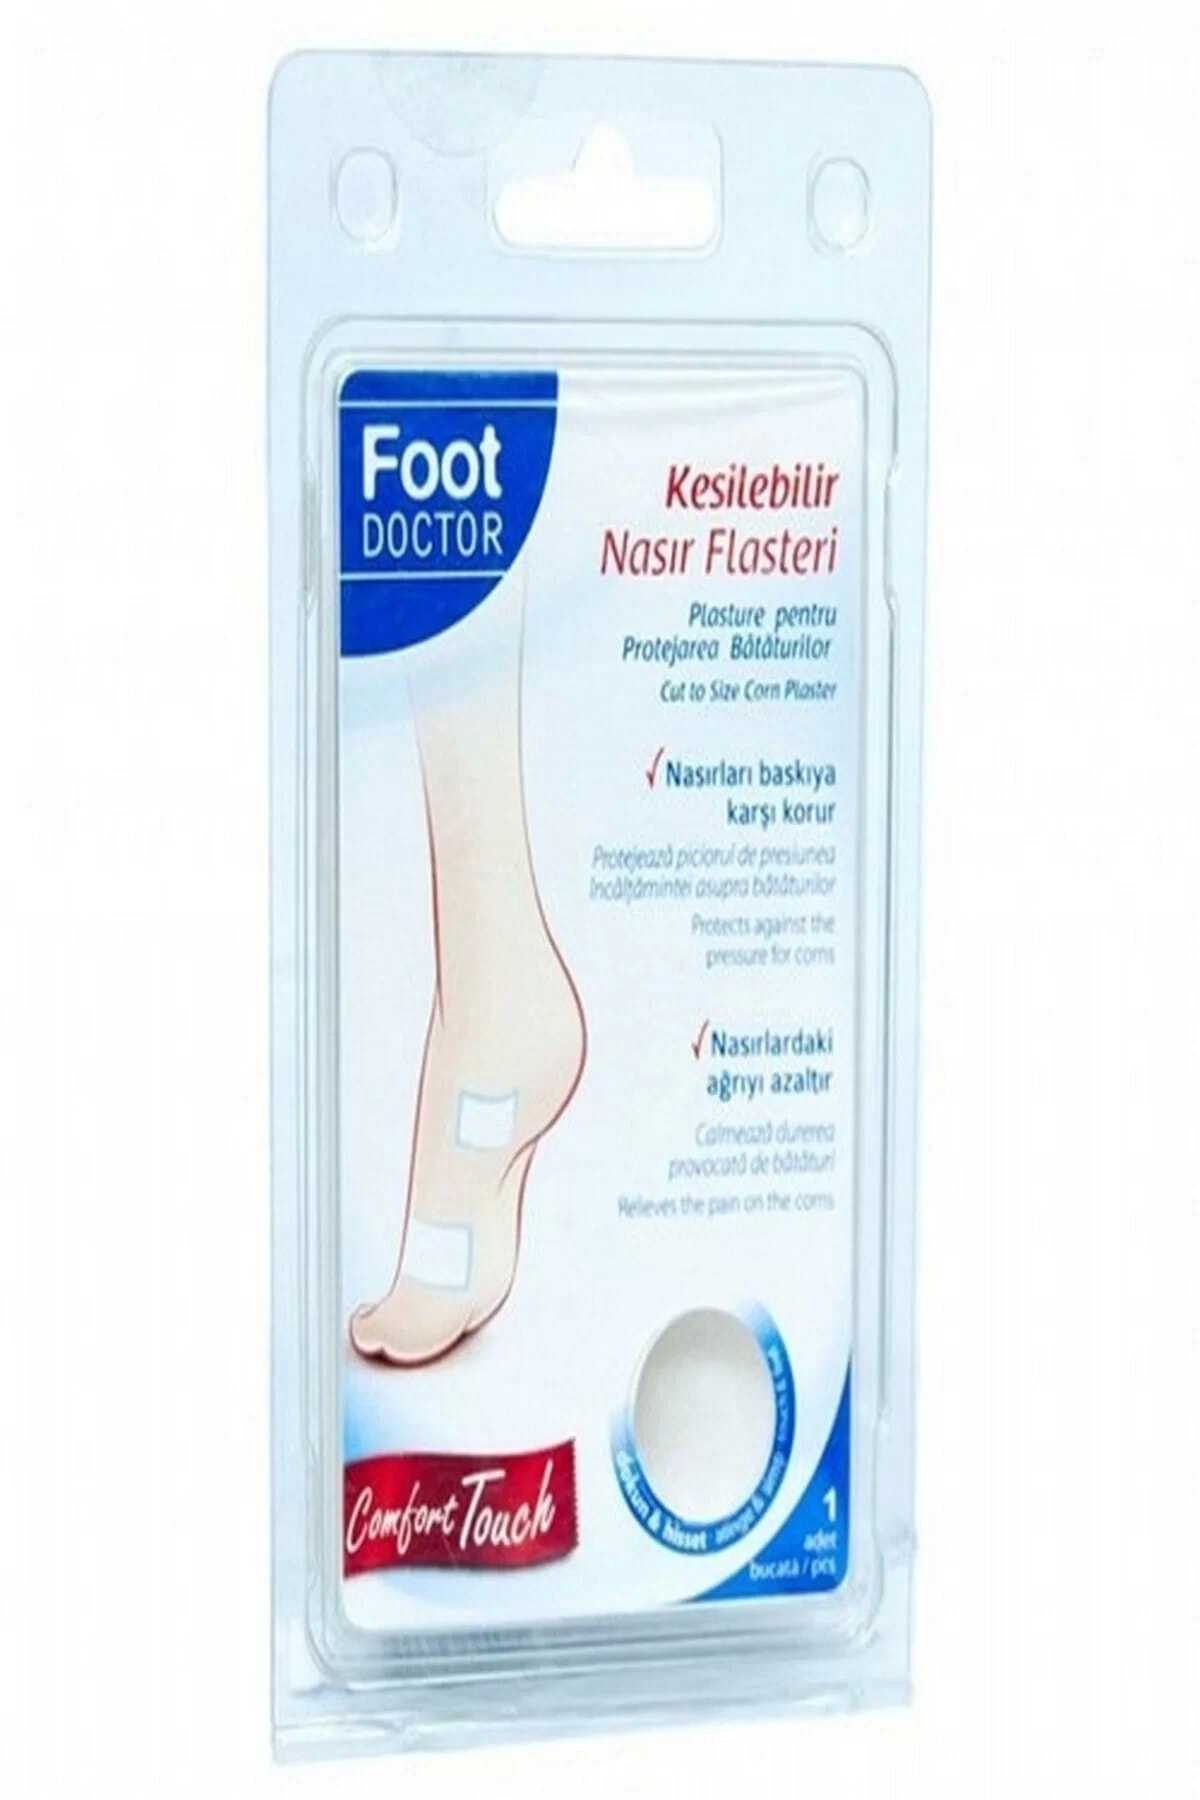 Foot Doctor Kesilebilir Nasır Flaster